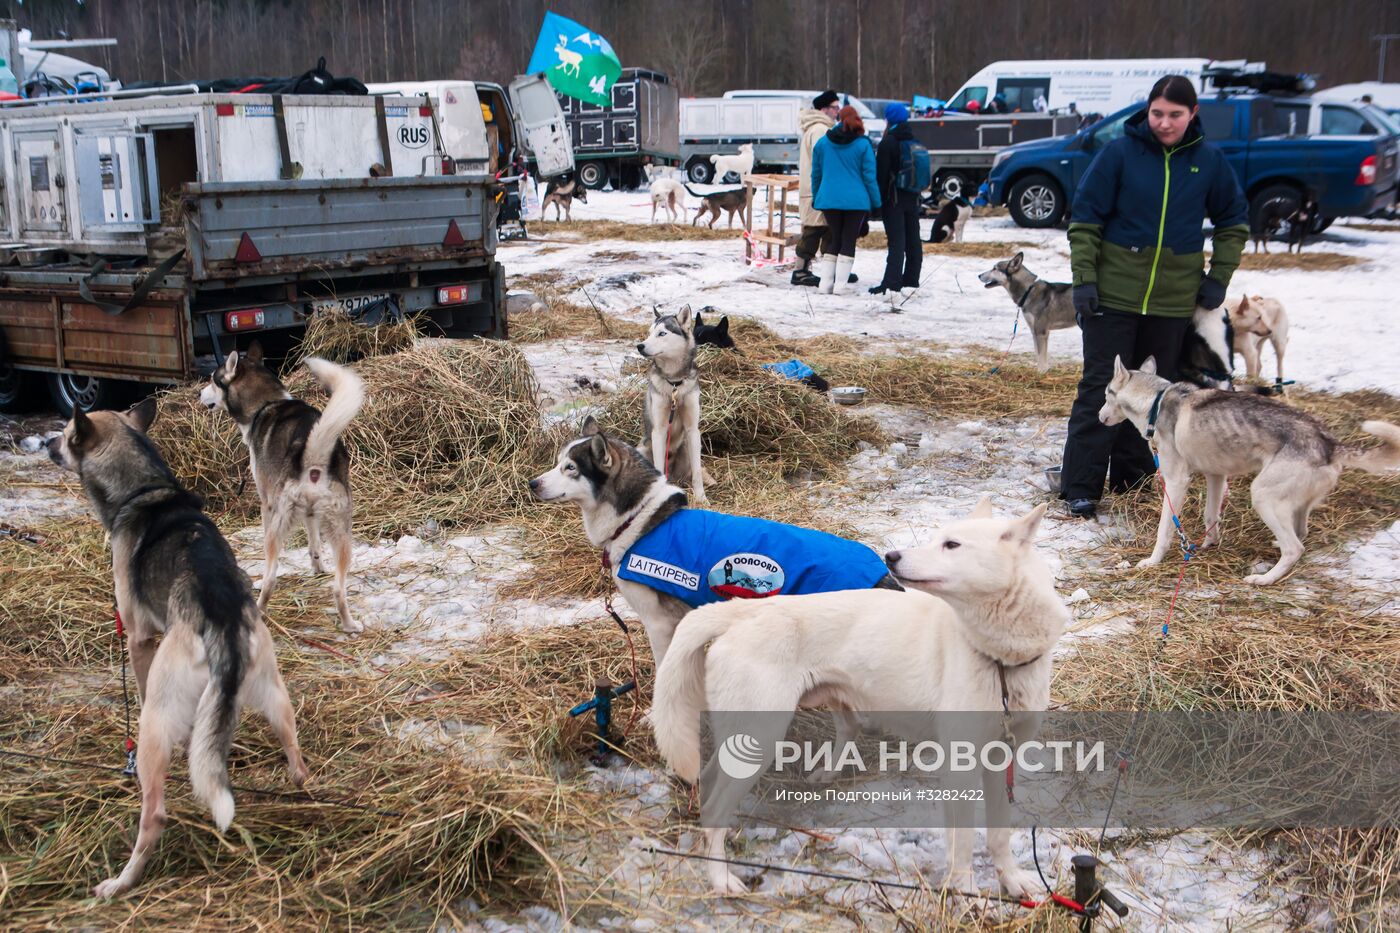 Соревнования по гонкам на собачьих упряжках "По земле Сампо" в Петрозаводске